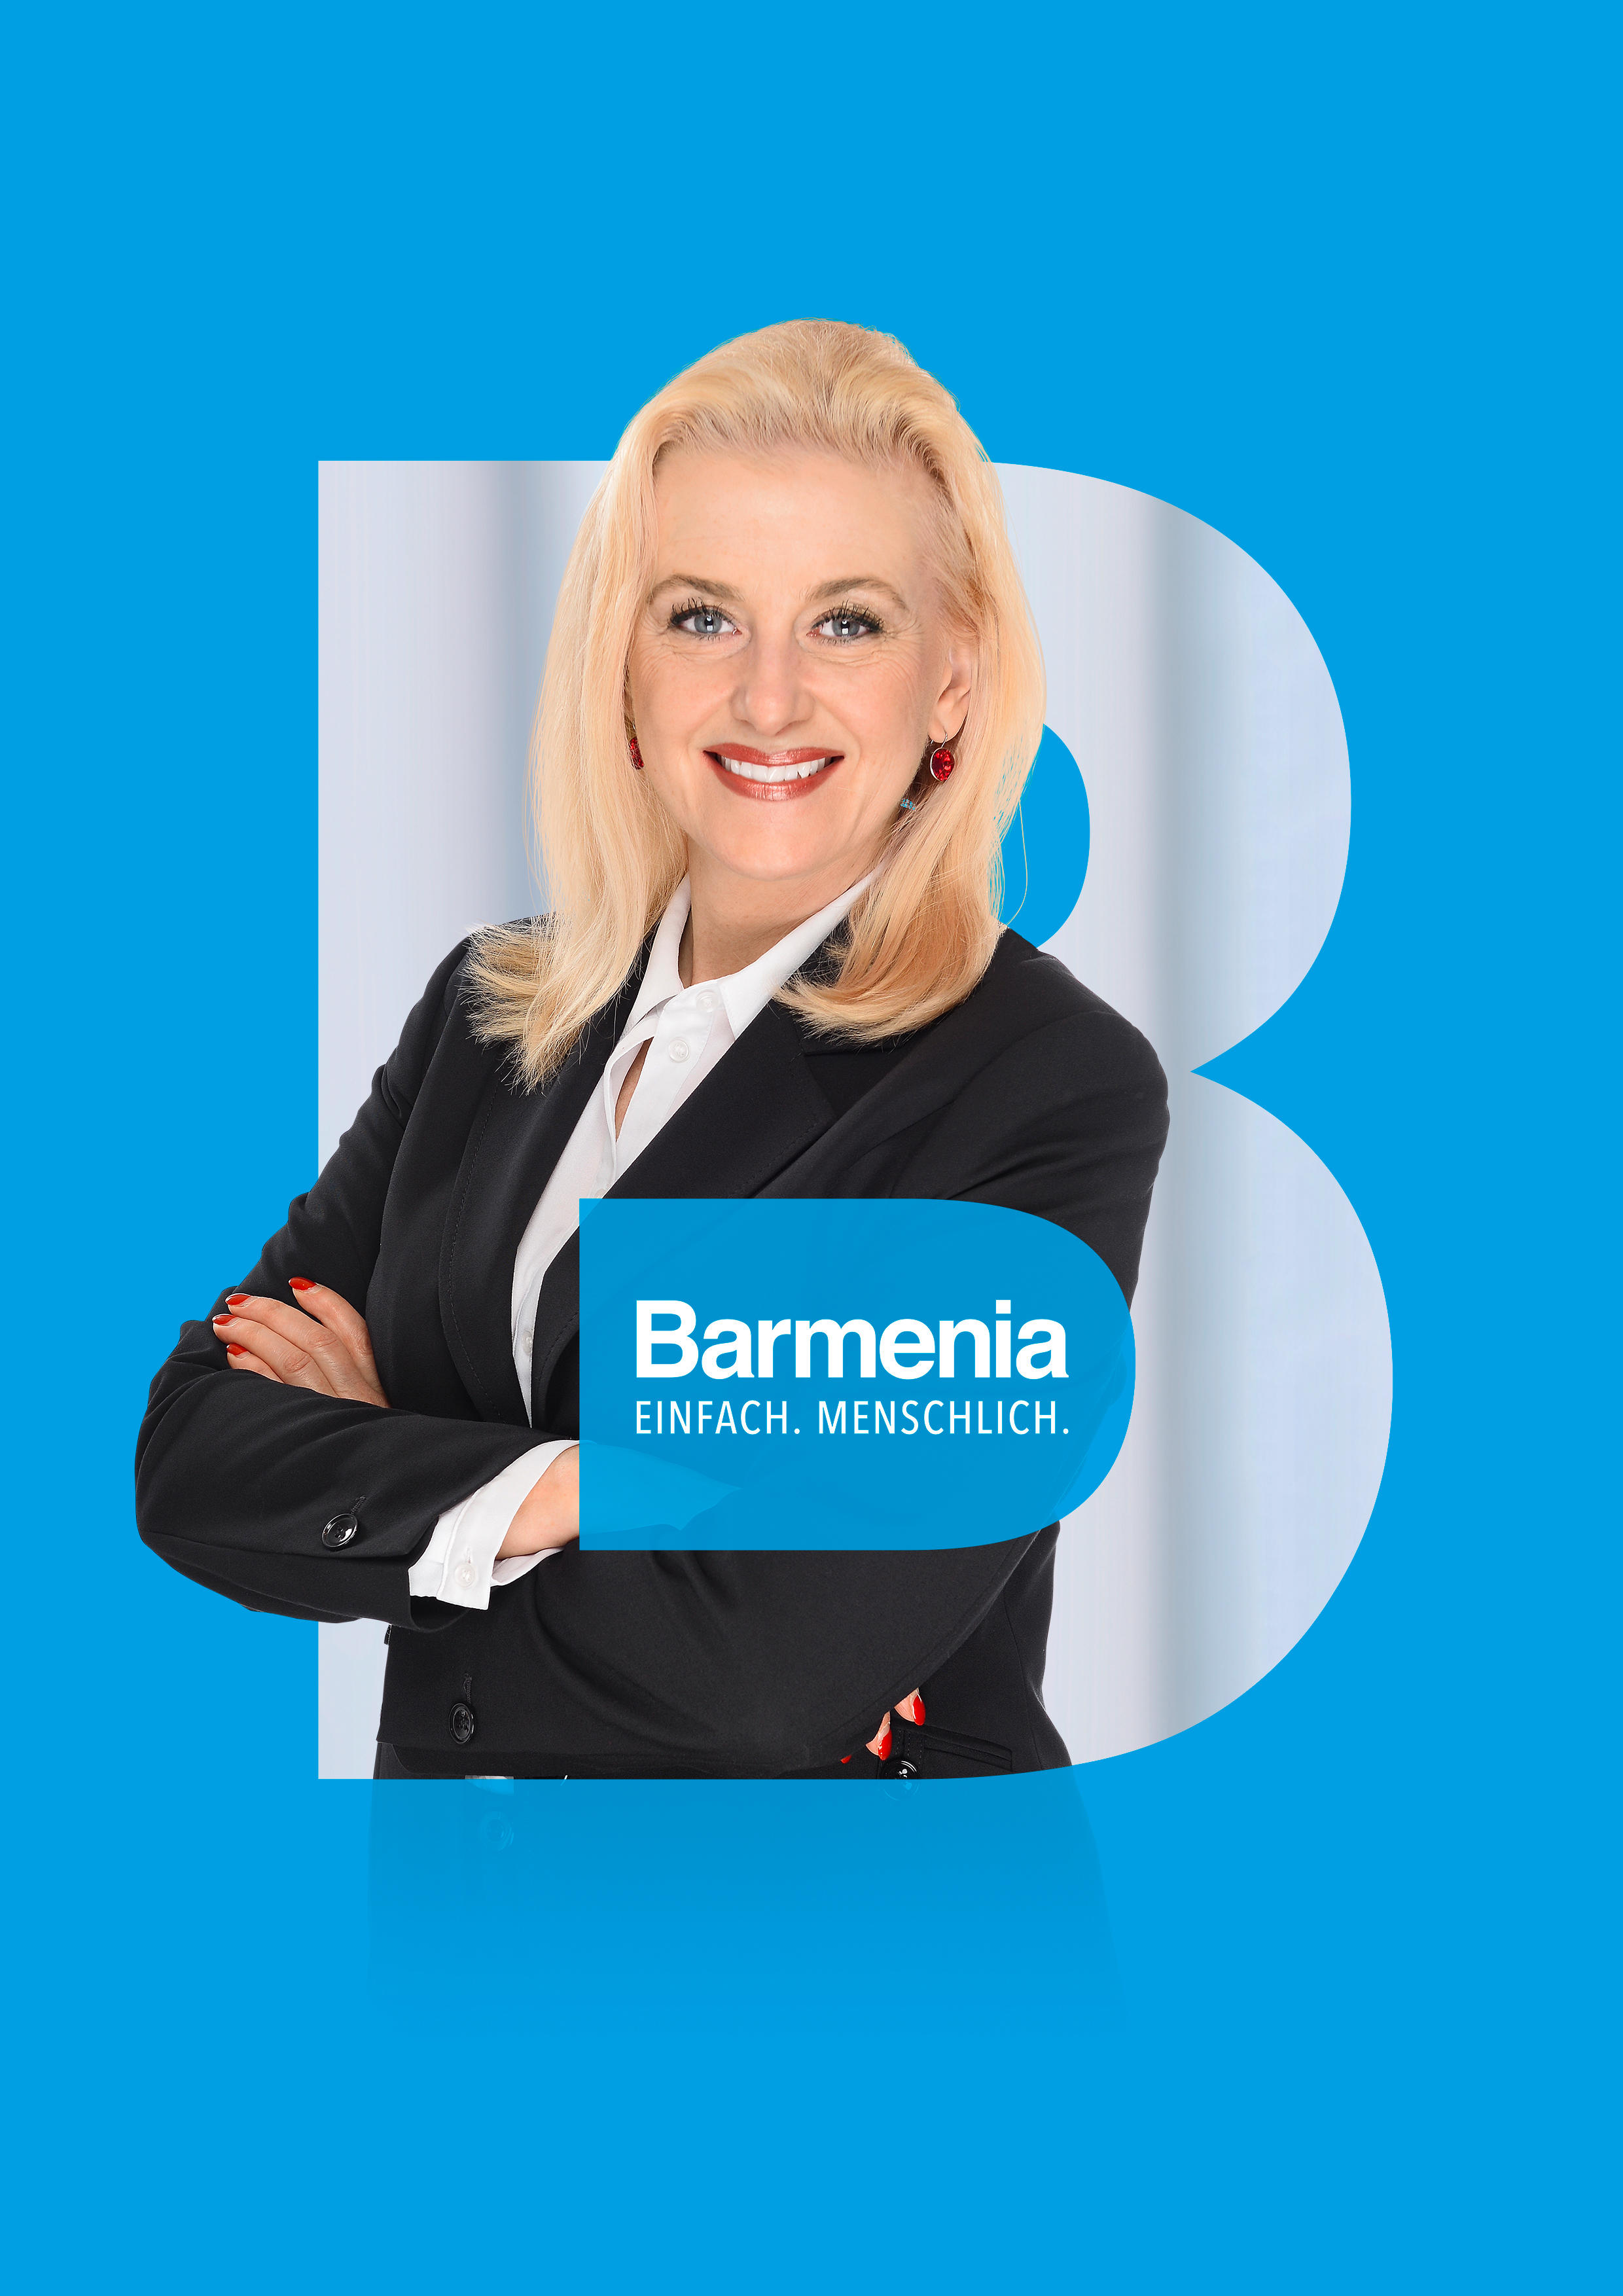 Barbara Geffe. Ihre Ansprechpartnerin für die Barmenia Versicherung in Berlin.